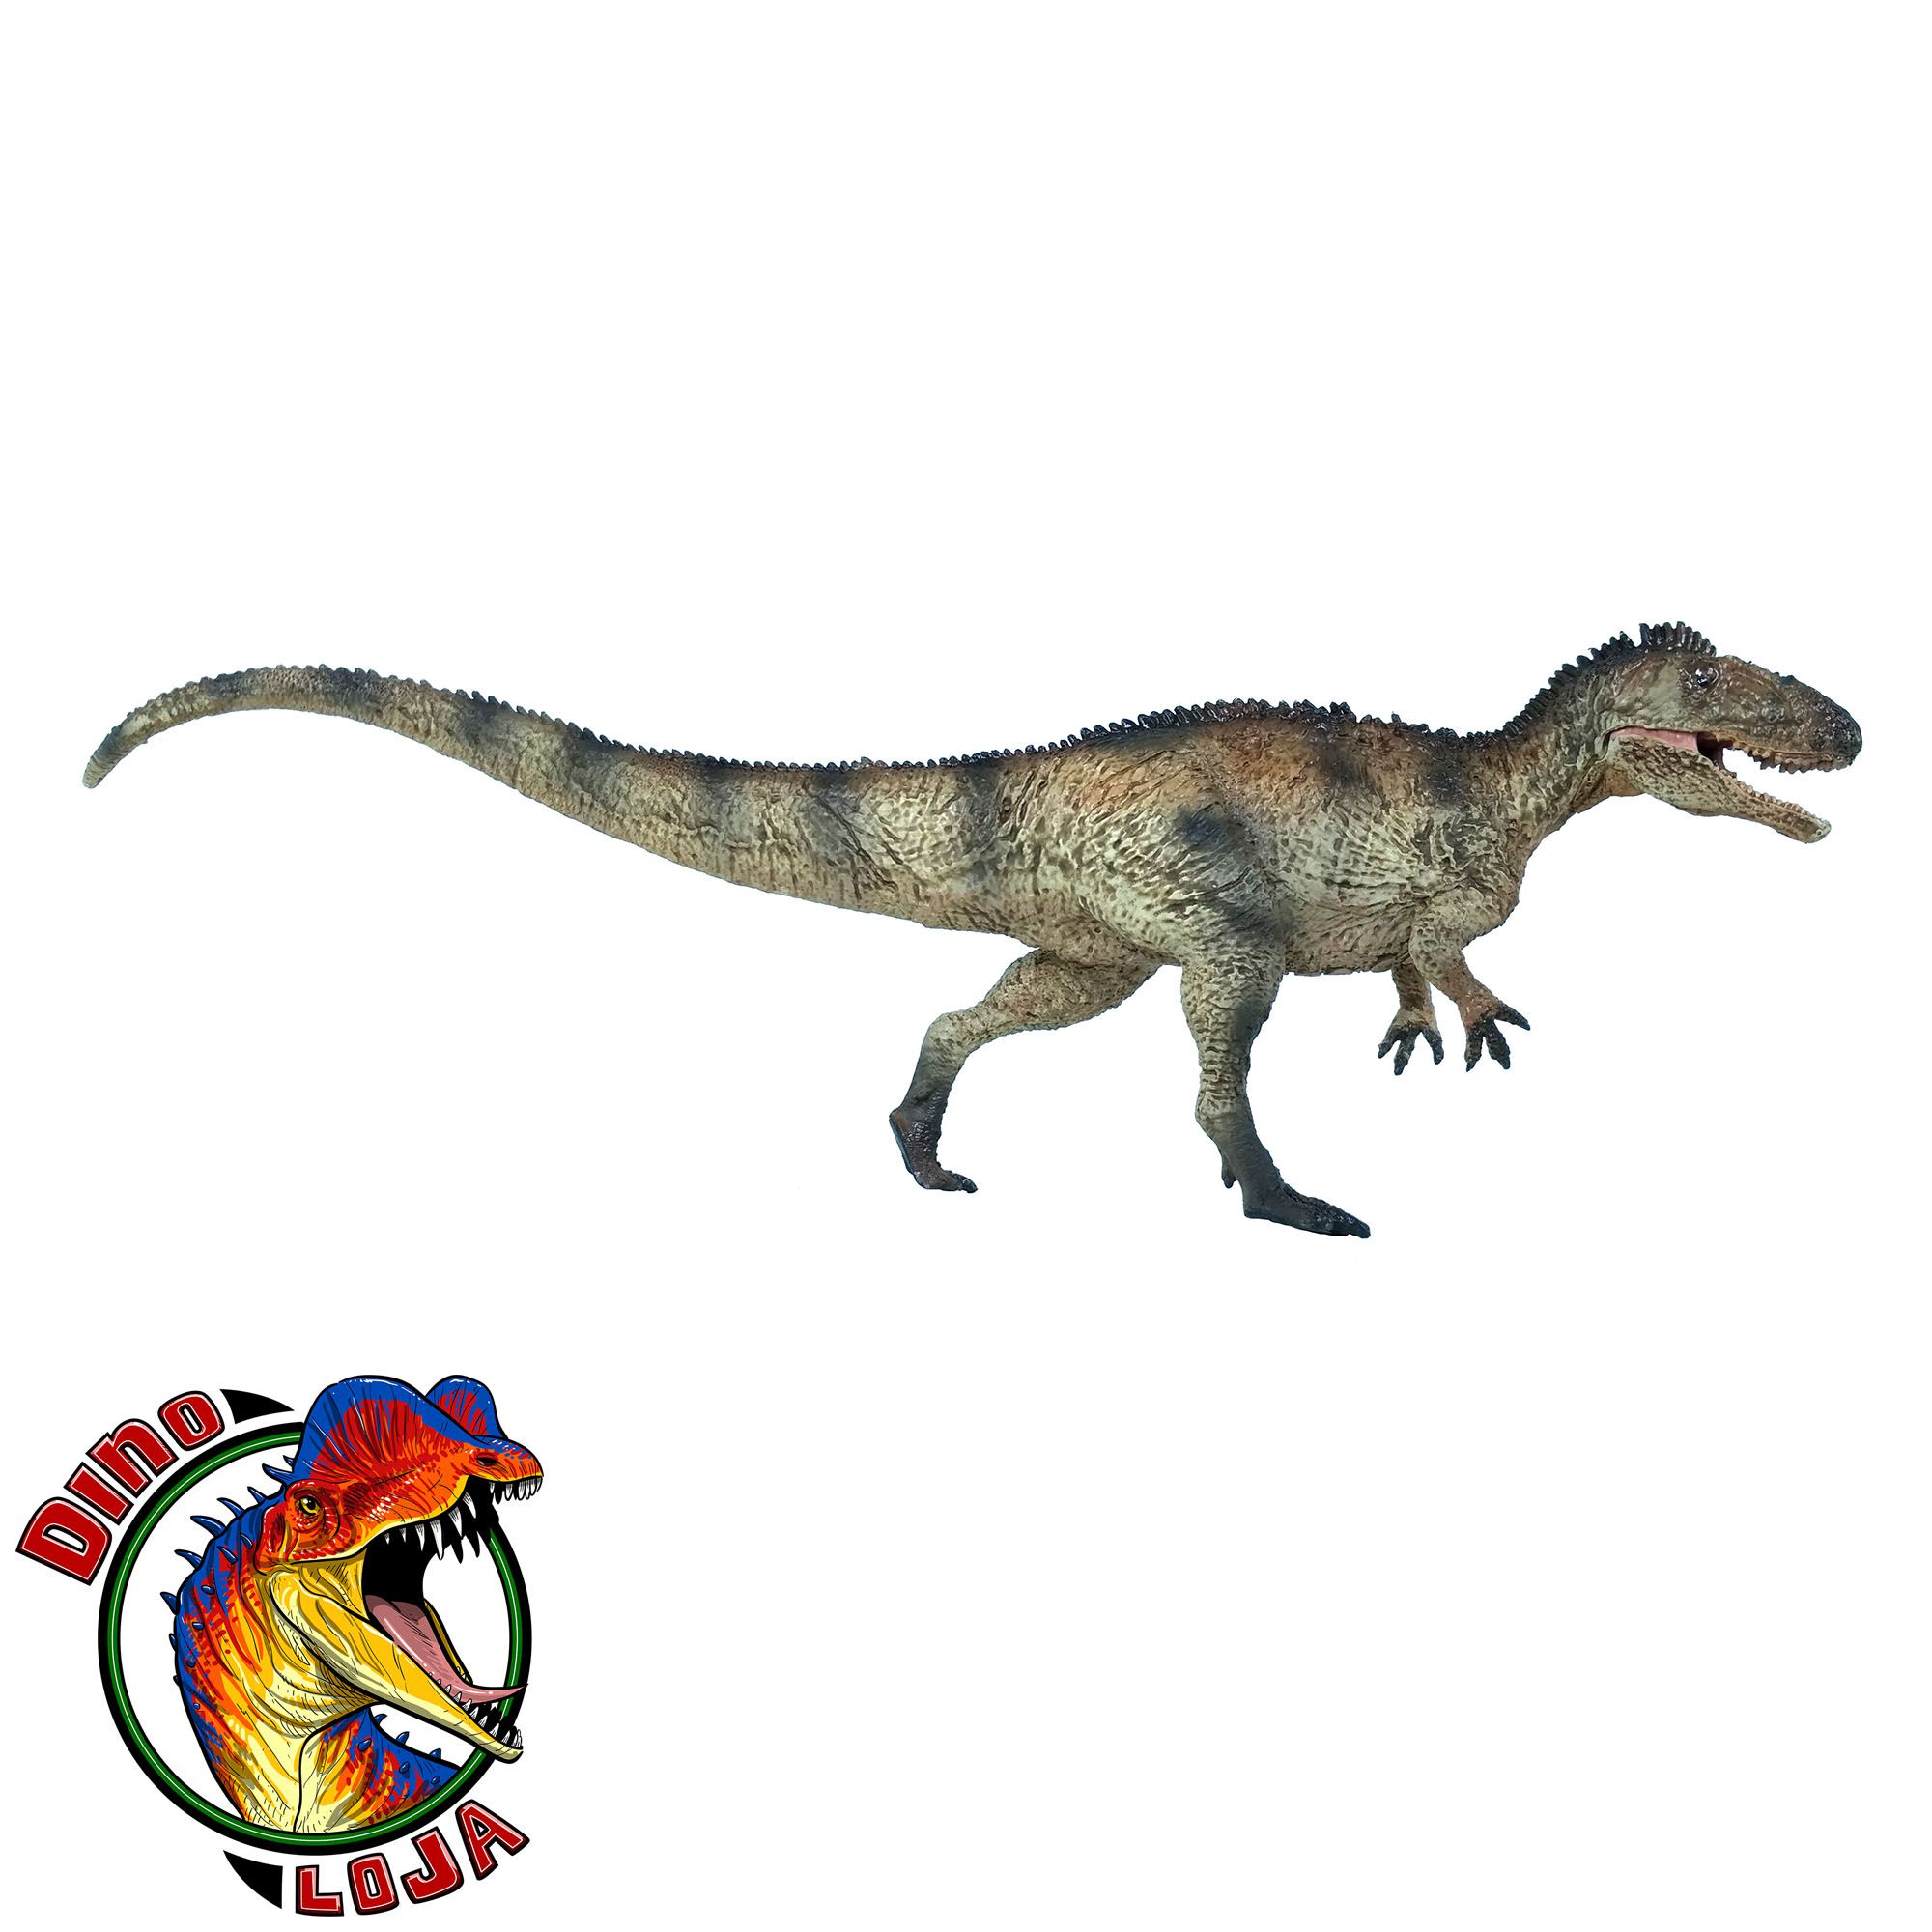 Preços baixos em Antigo dinossauro colecionável